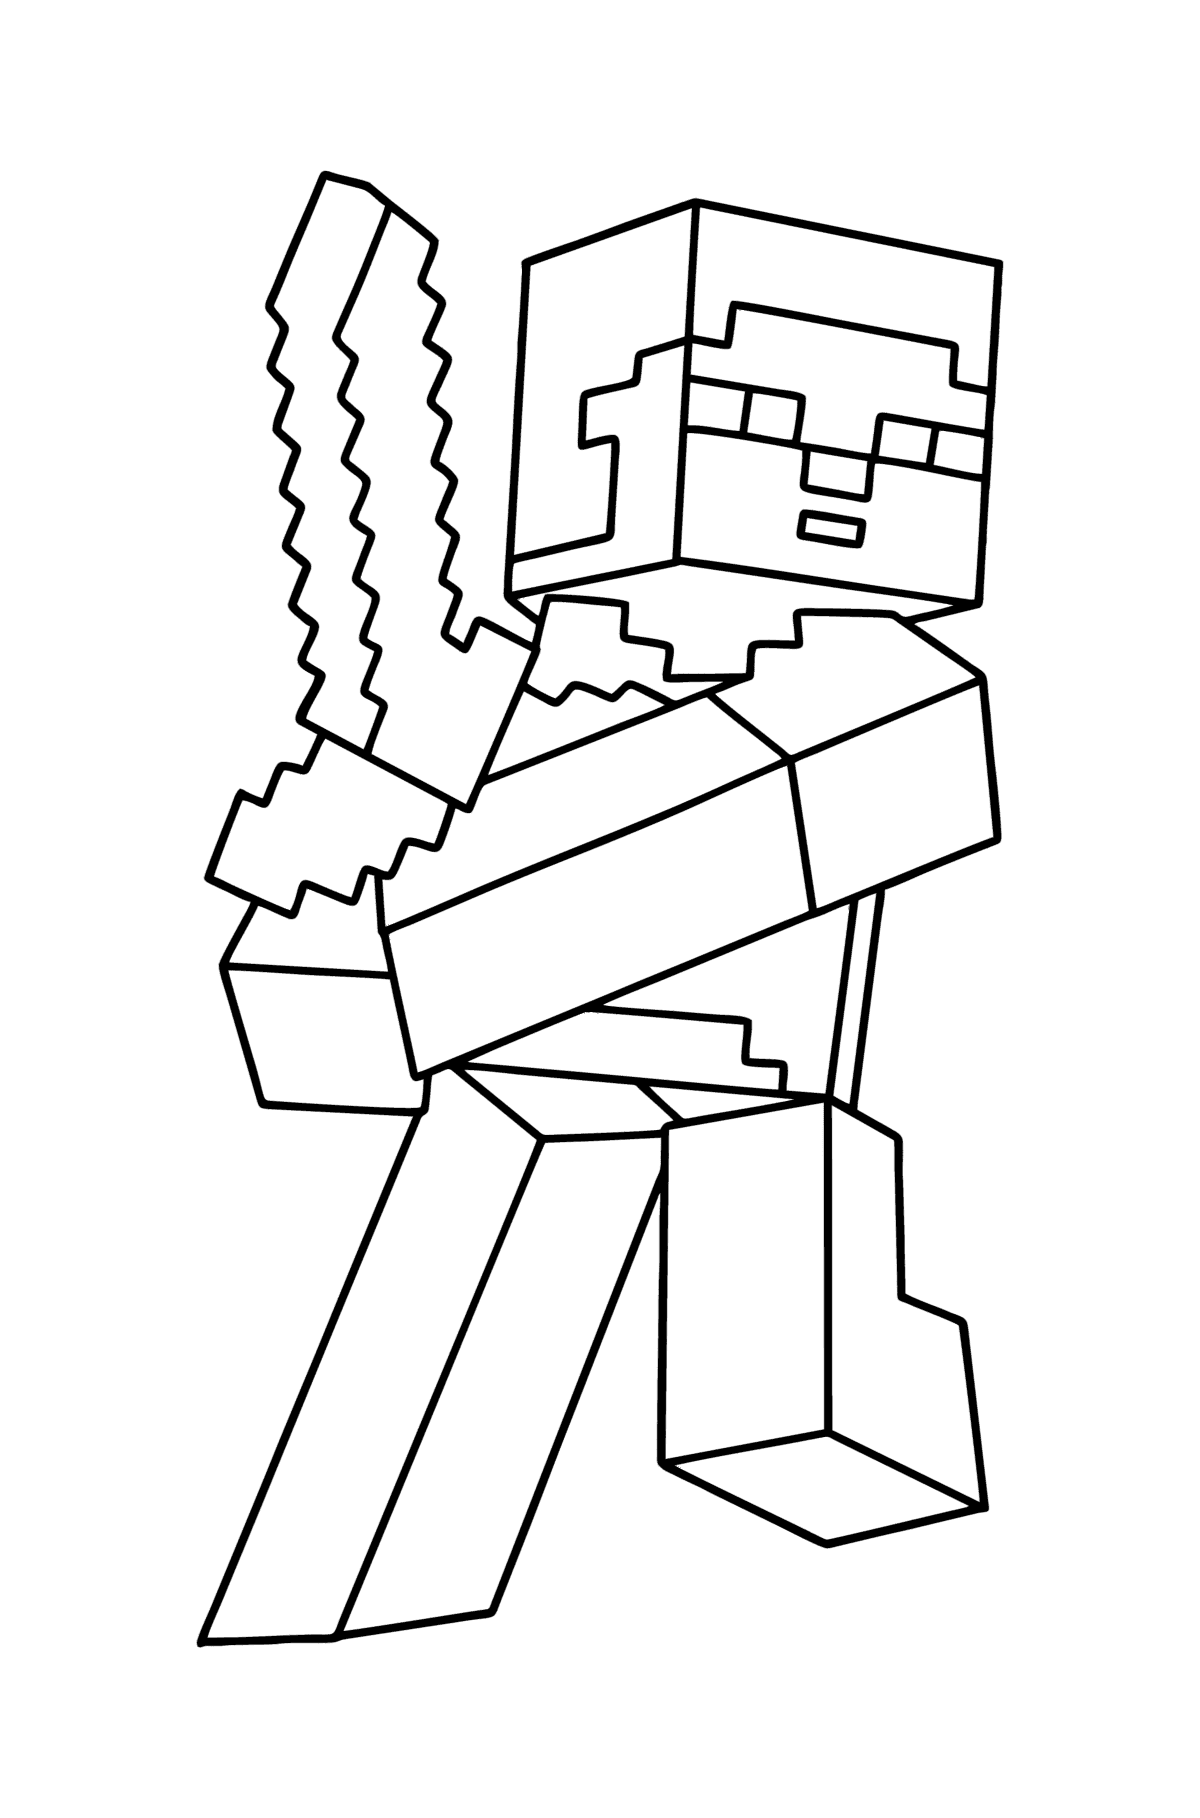 Tegning til fargelegging Minecraft Steve - Tegninger til fargelegging for barn